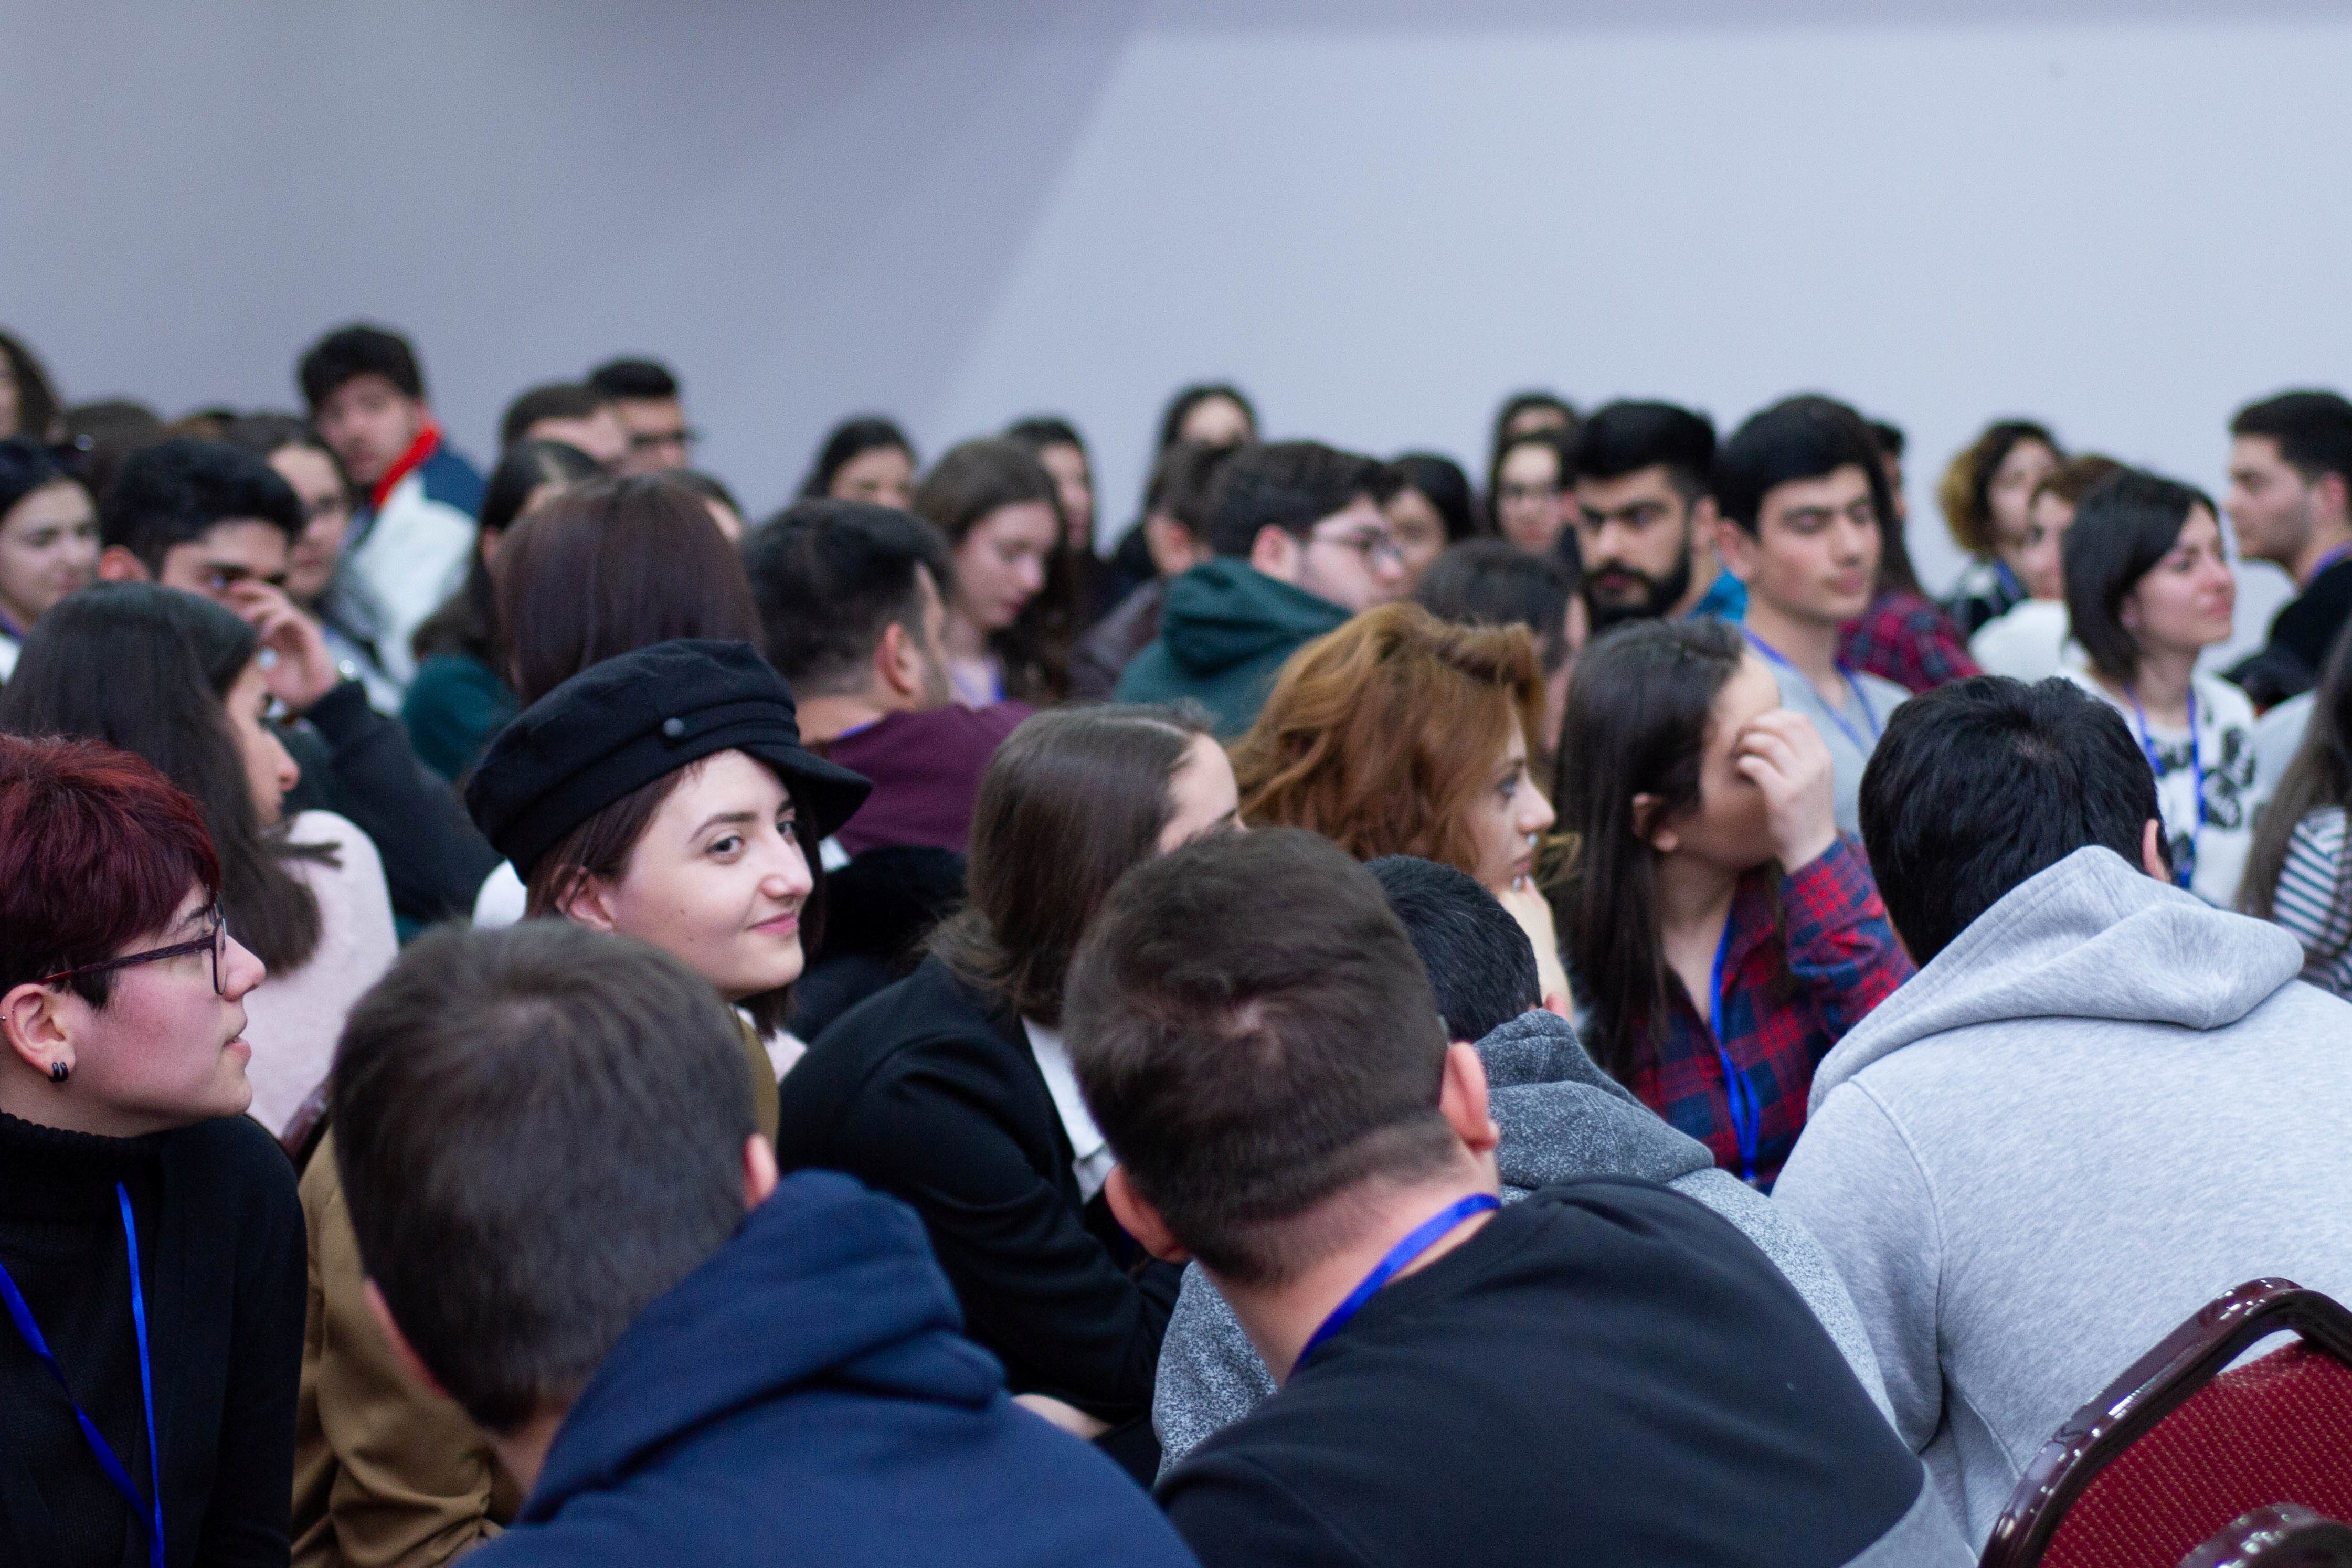 «ԱՅՍԵԿ-Հայաստան»-ը մեկնարկել է հայ երիտասարդների շրջանում առաջնորդությունը զարգացնելուն ուղղված եռօրյա սեմինար